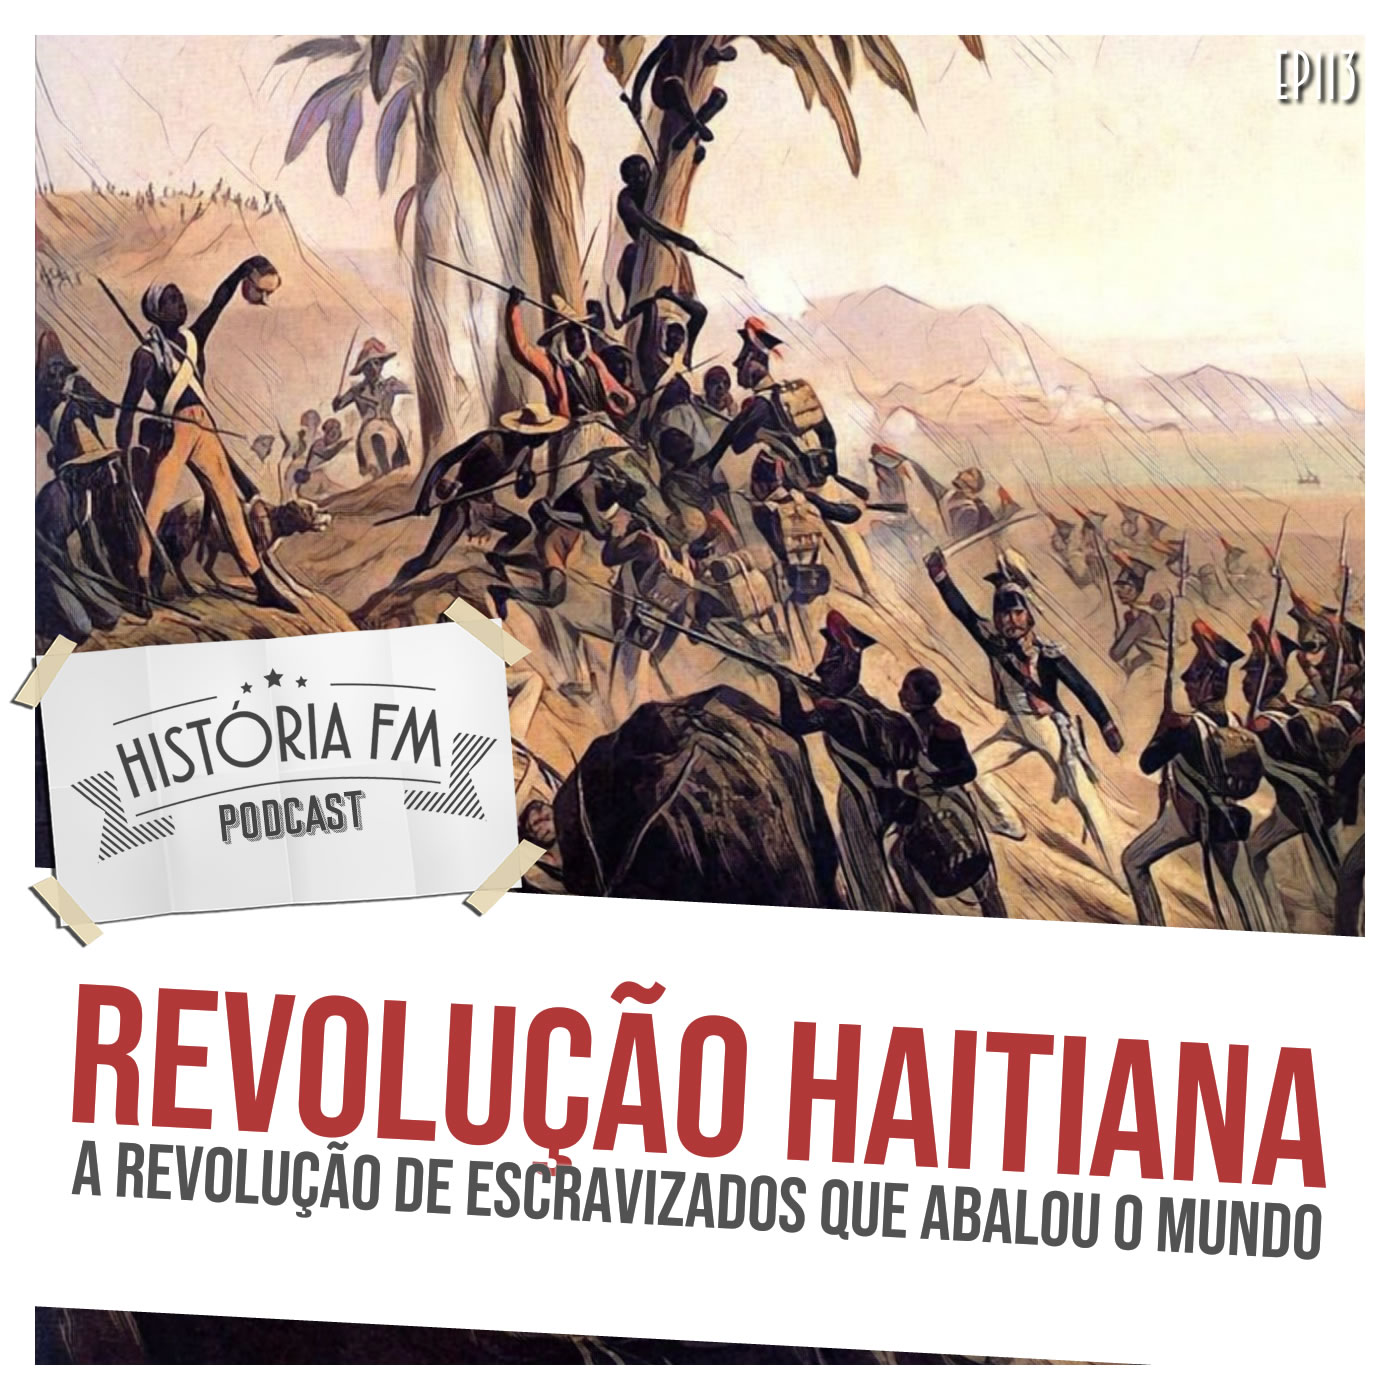 Revolução Haitiana: a revolução de escravizados que abalou o mundo